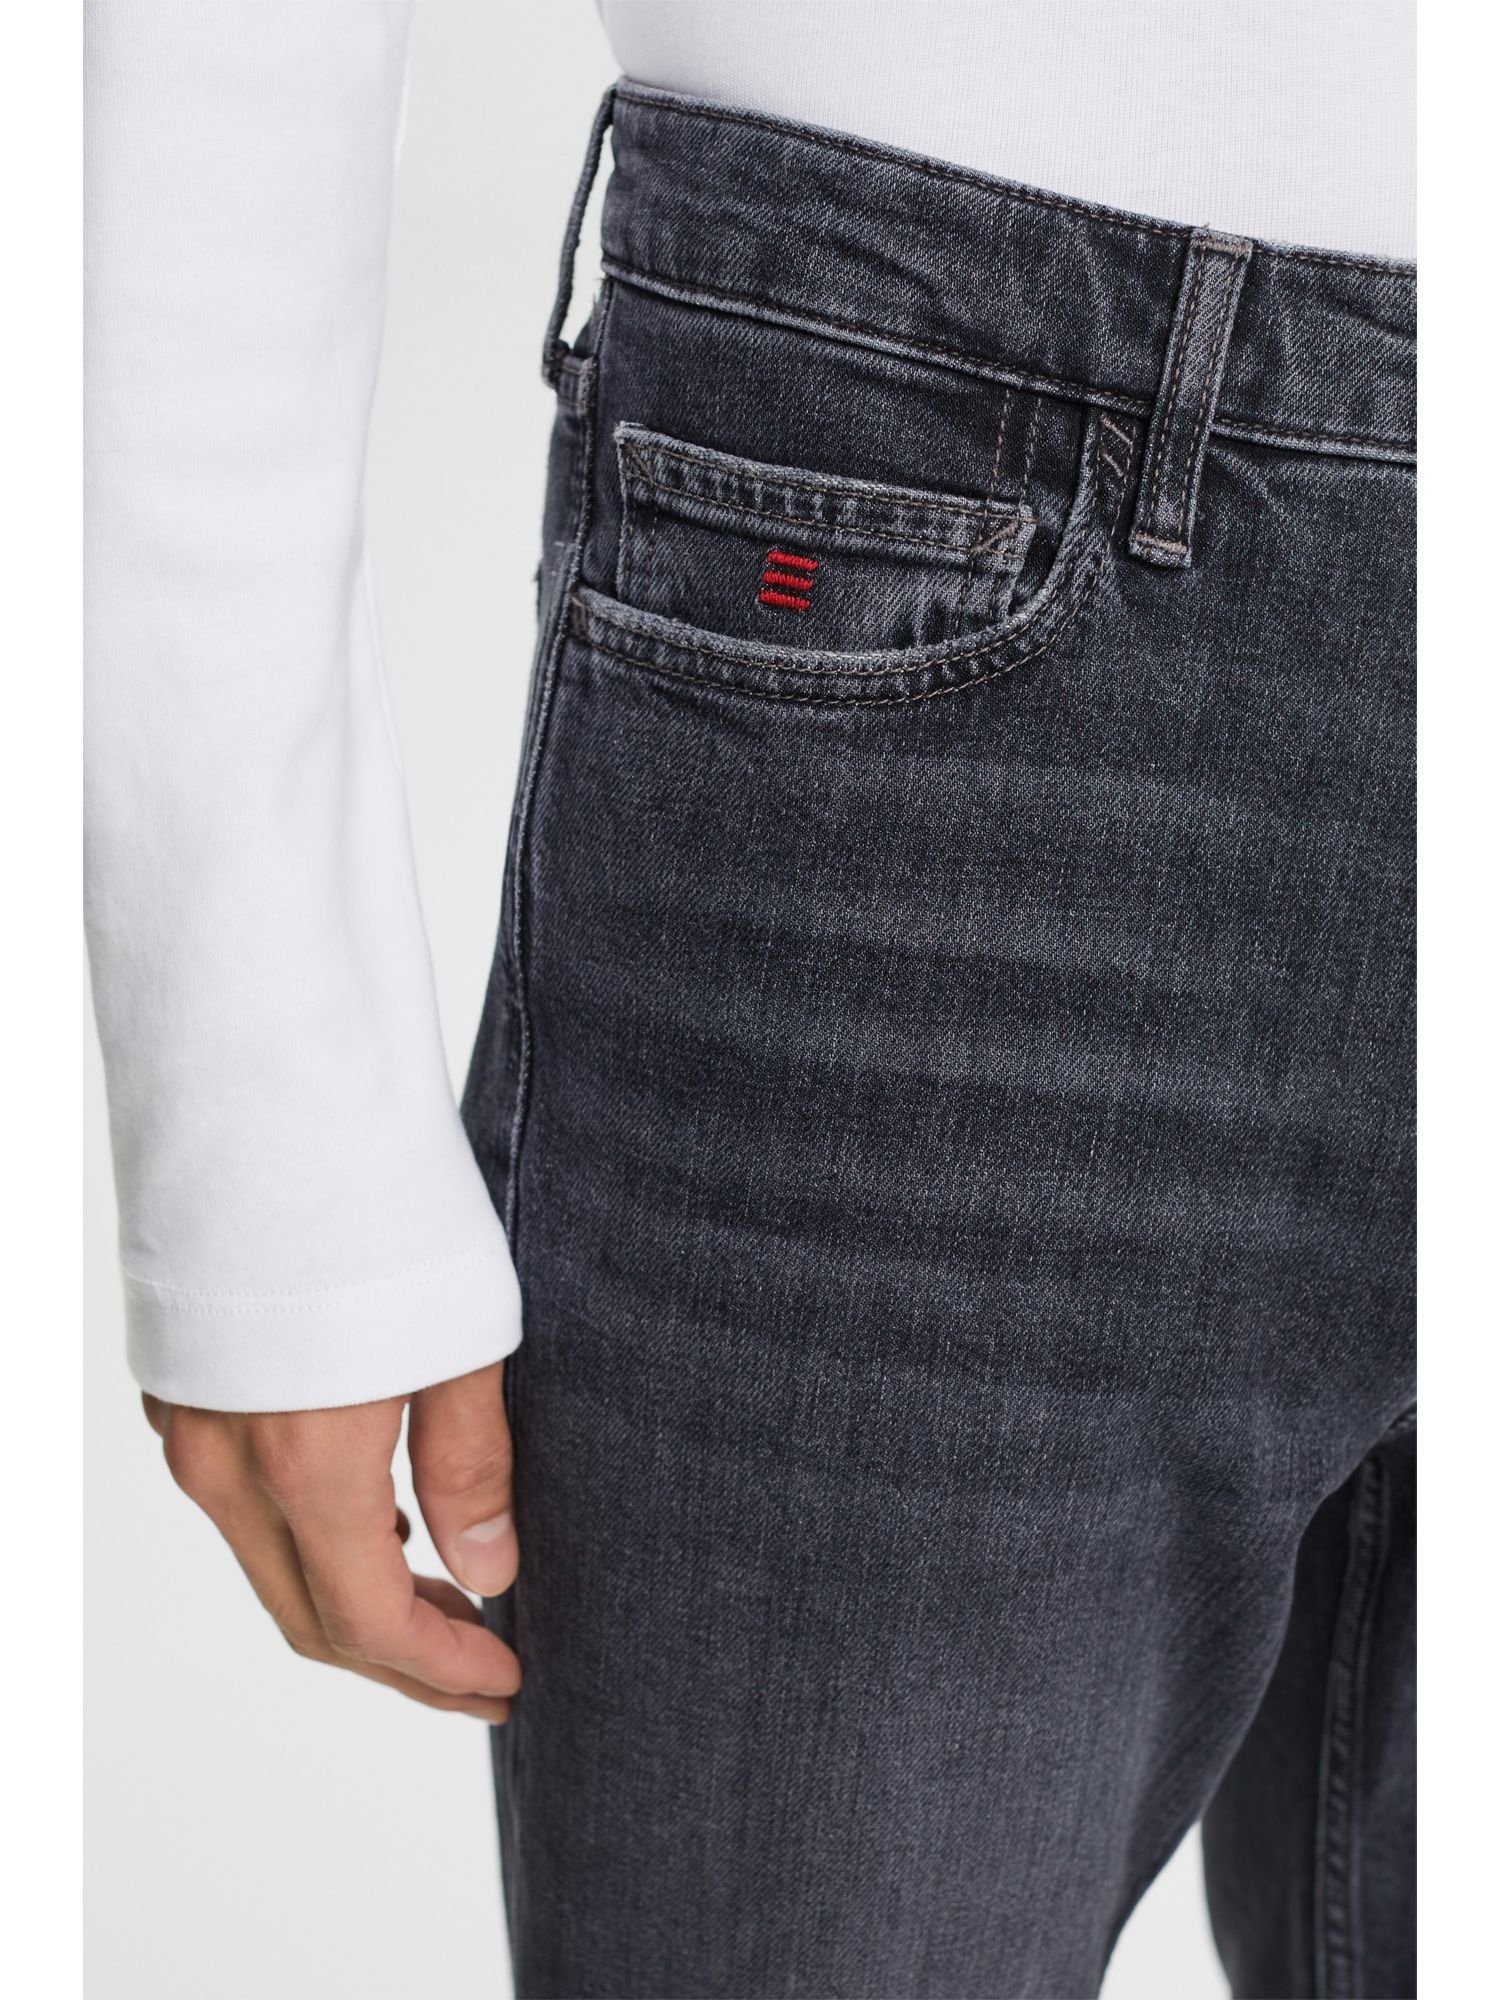 Esprit Relax-fit-Jeans Lockere mittlerer mit Retro-Jeans Bundhöhe